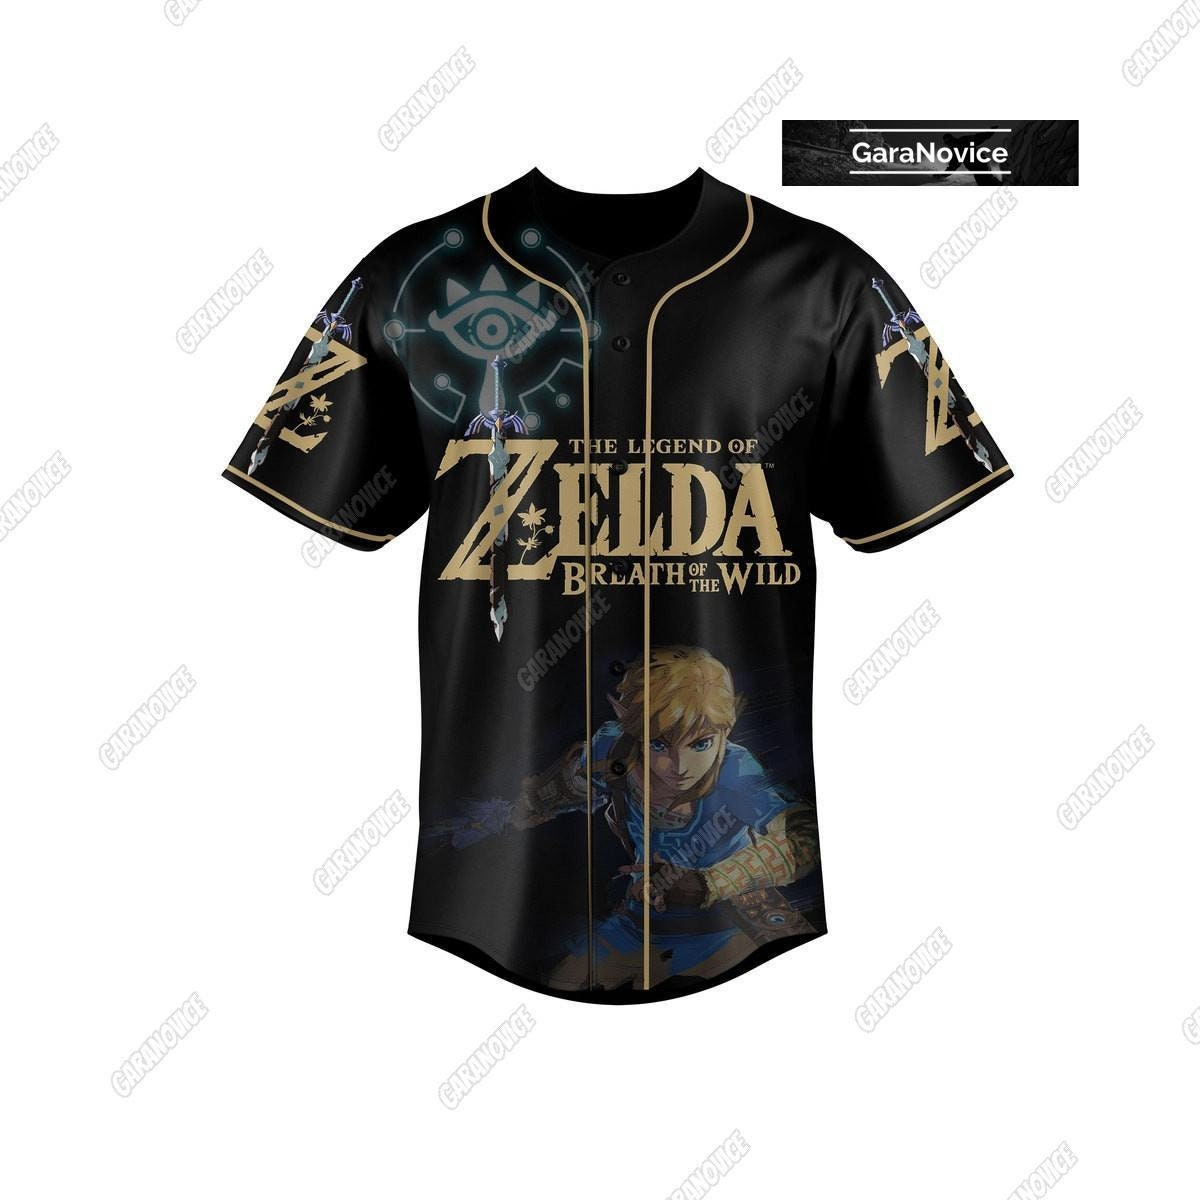 Legend Of Zelda Shirt, Breath Of The Wild Baseball Shirt